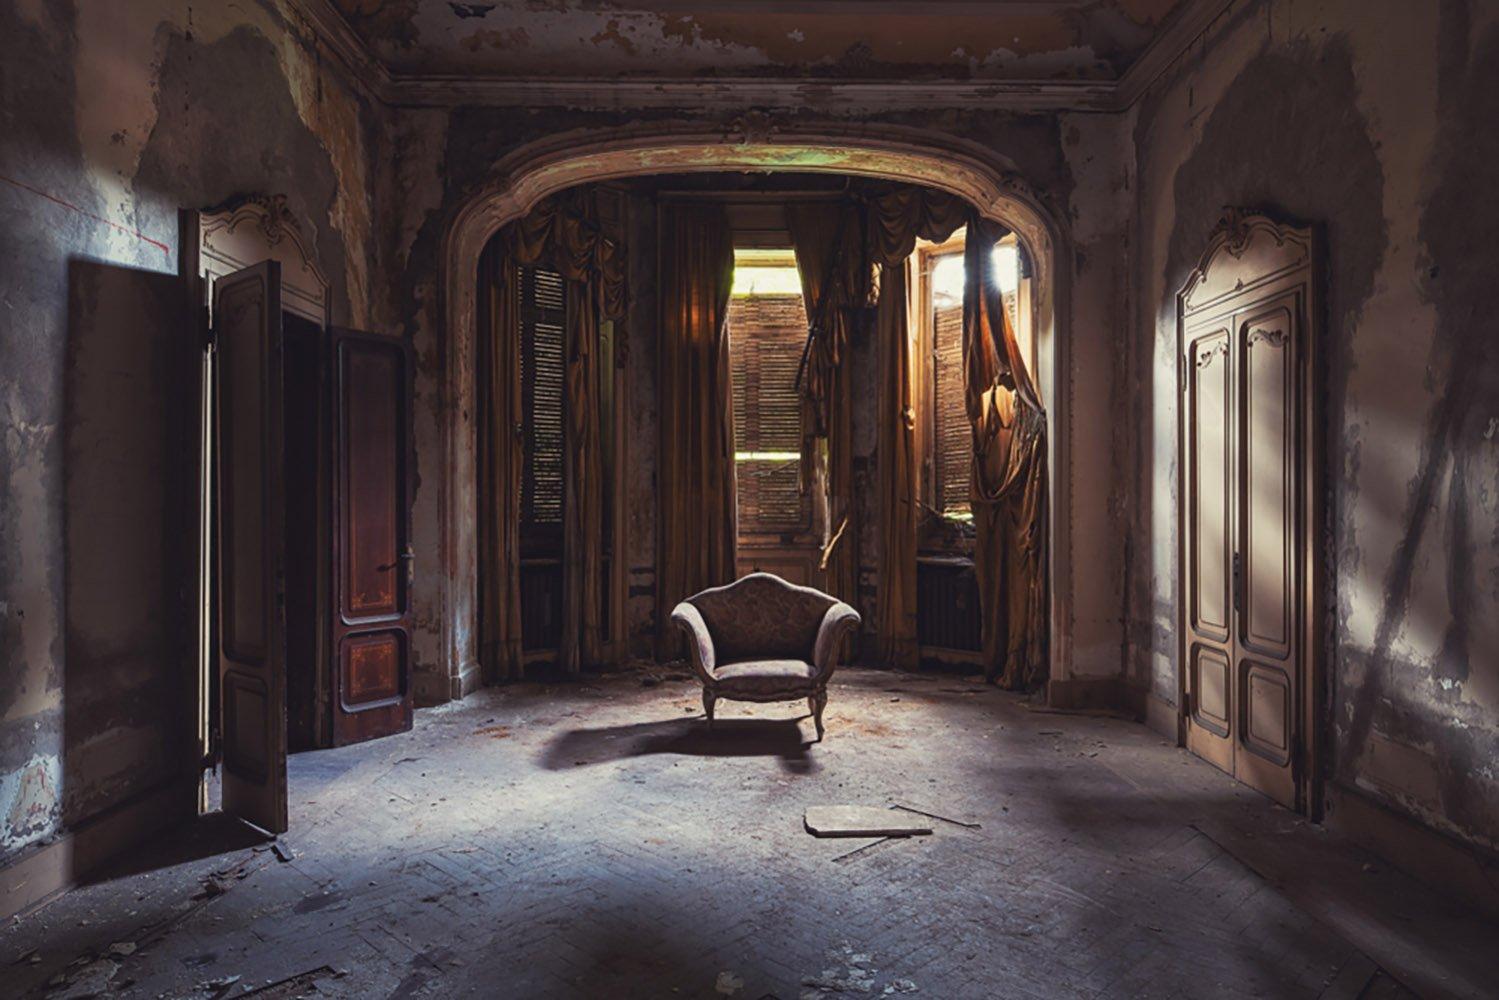 Isolamento by Gina Soden - Interior of abandoned villa, Italy